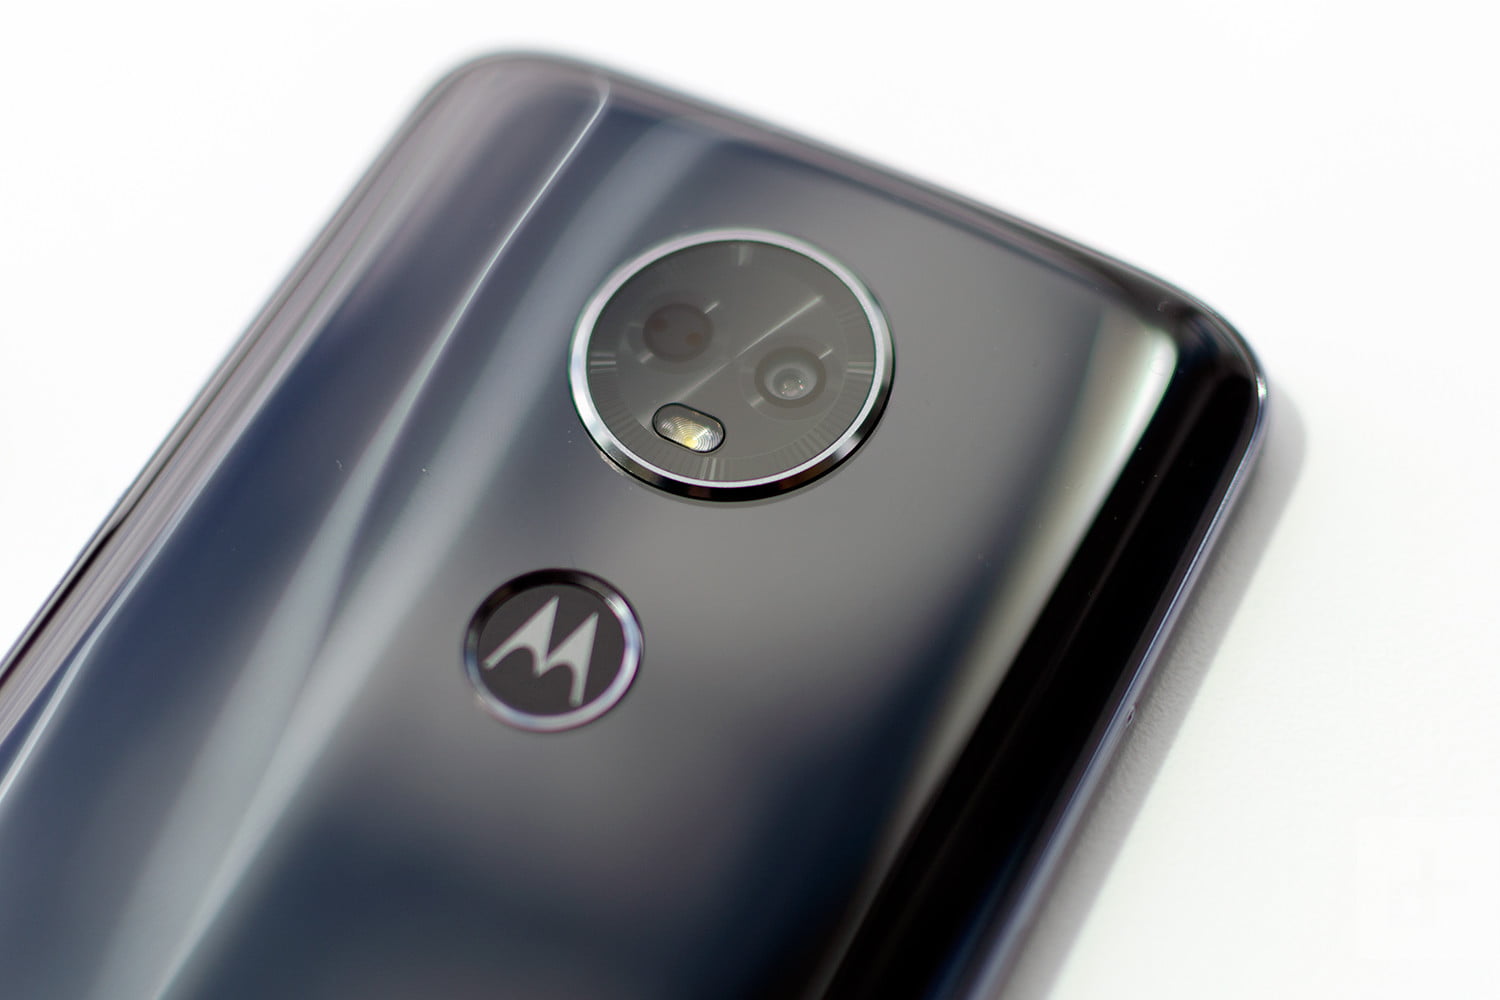 مقارنة بين هواتف Motorola الأحدث Motorola Moto E5 وMoto E5 Plus وMoto E5 Play